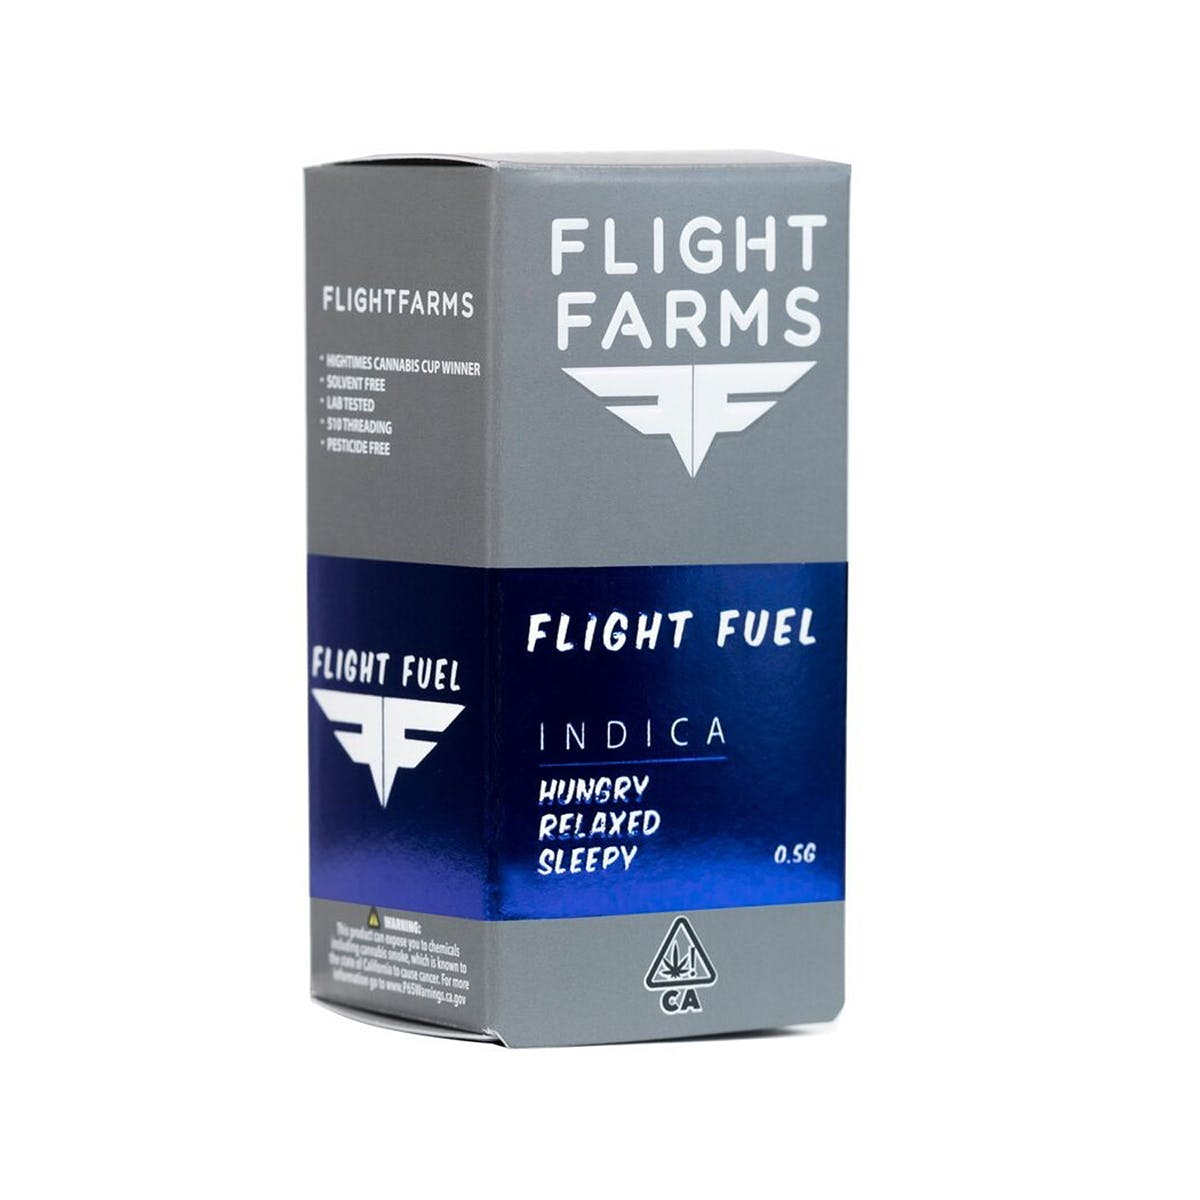 FLIGHT FARMS F9 Cartridge - Flight Fuel 500mg